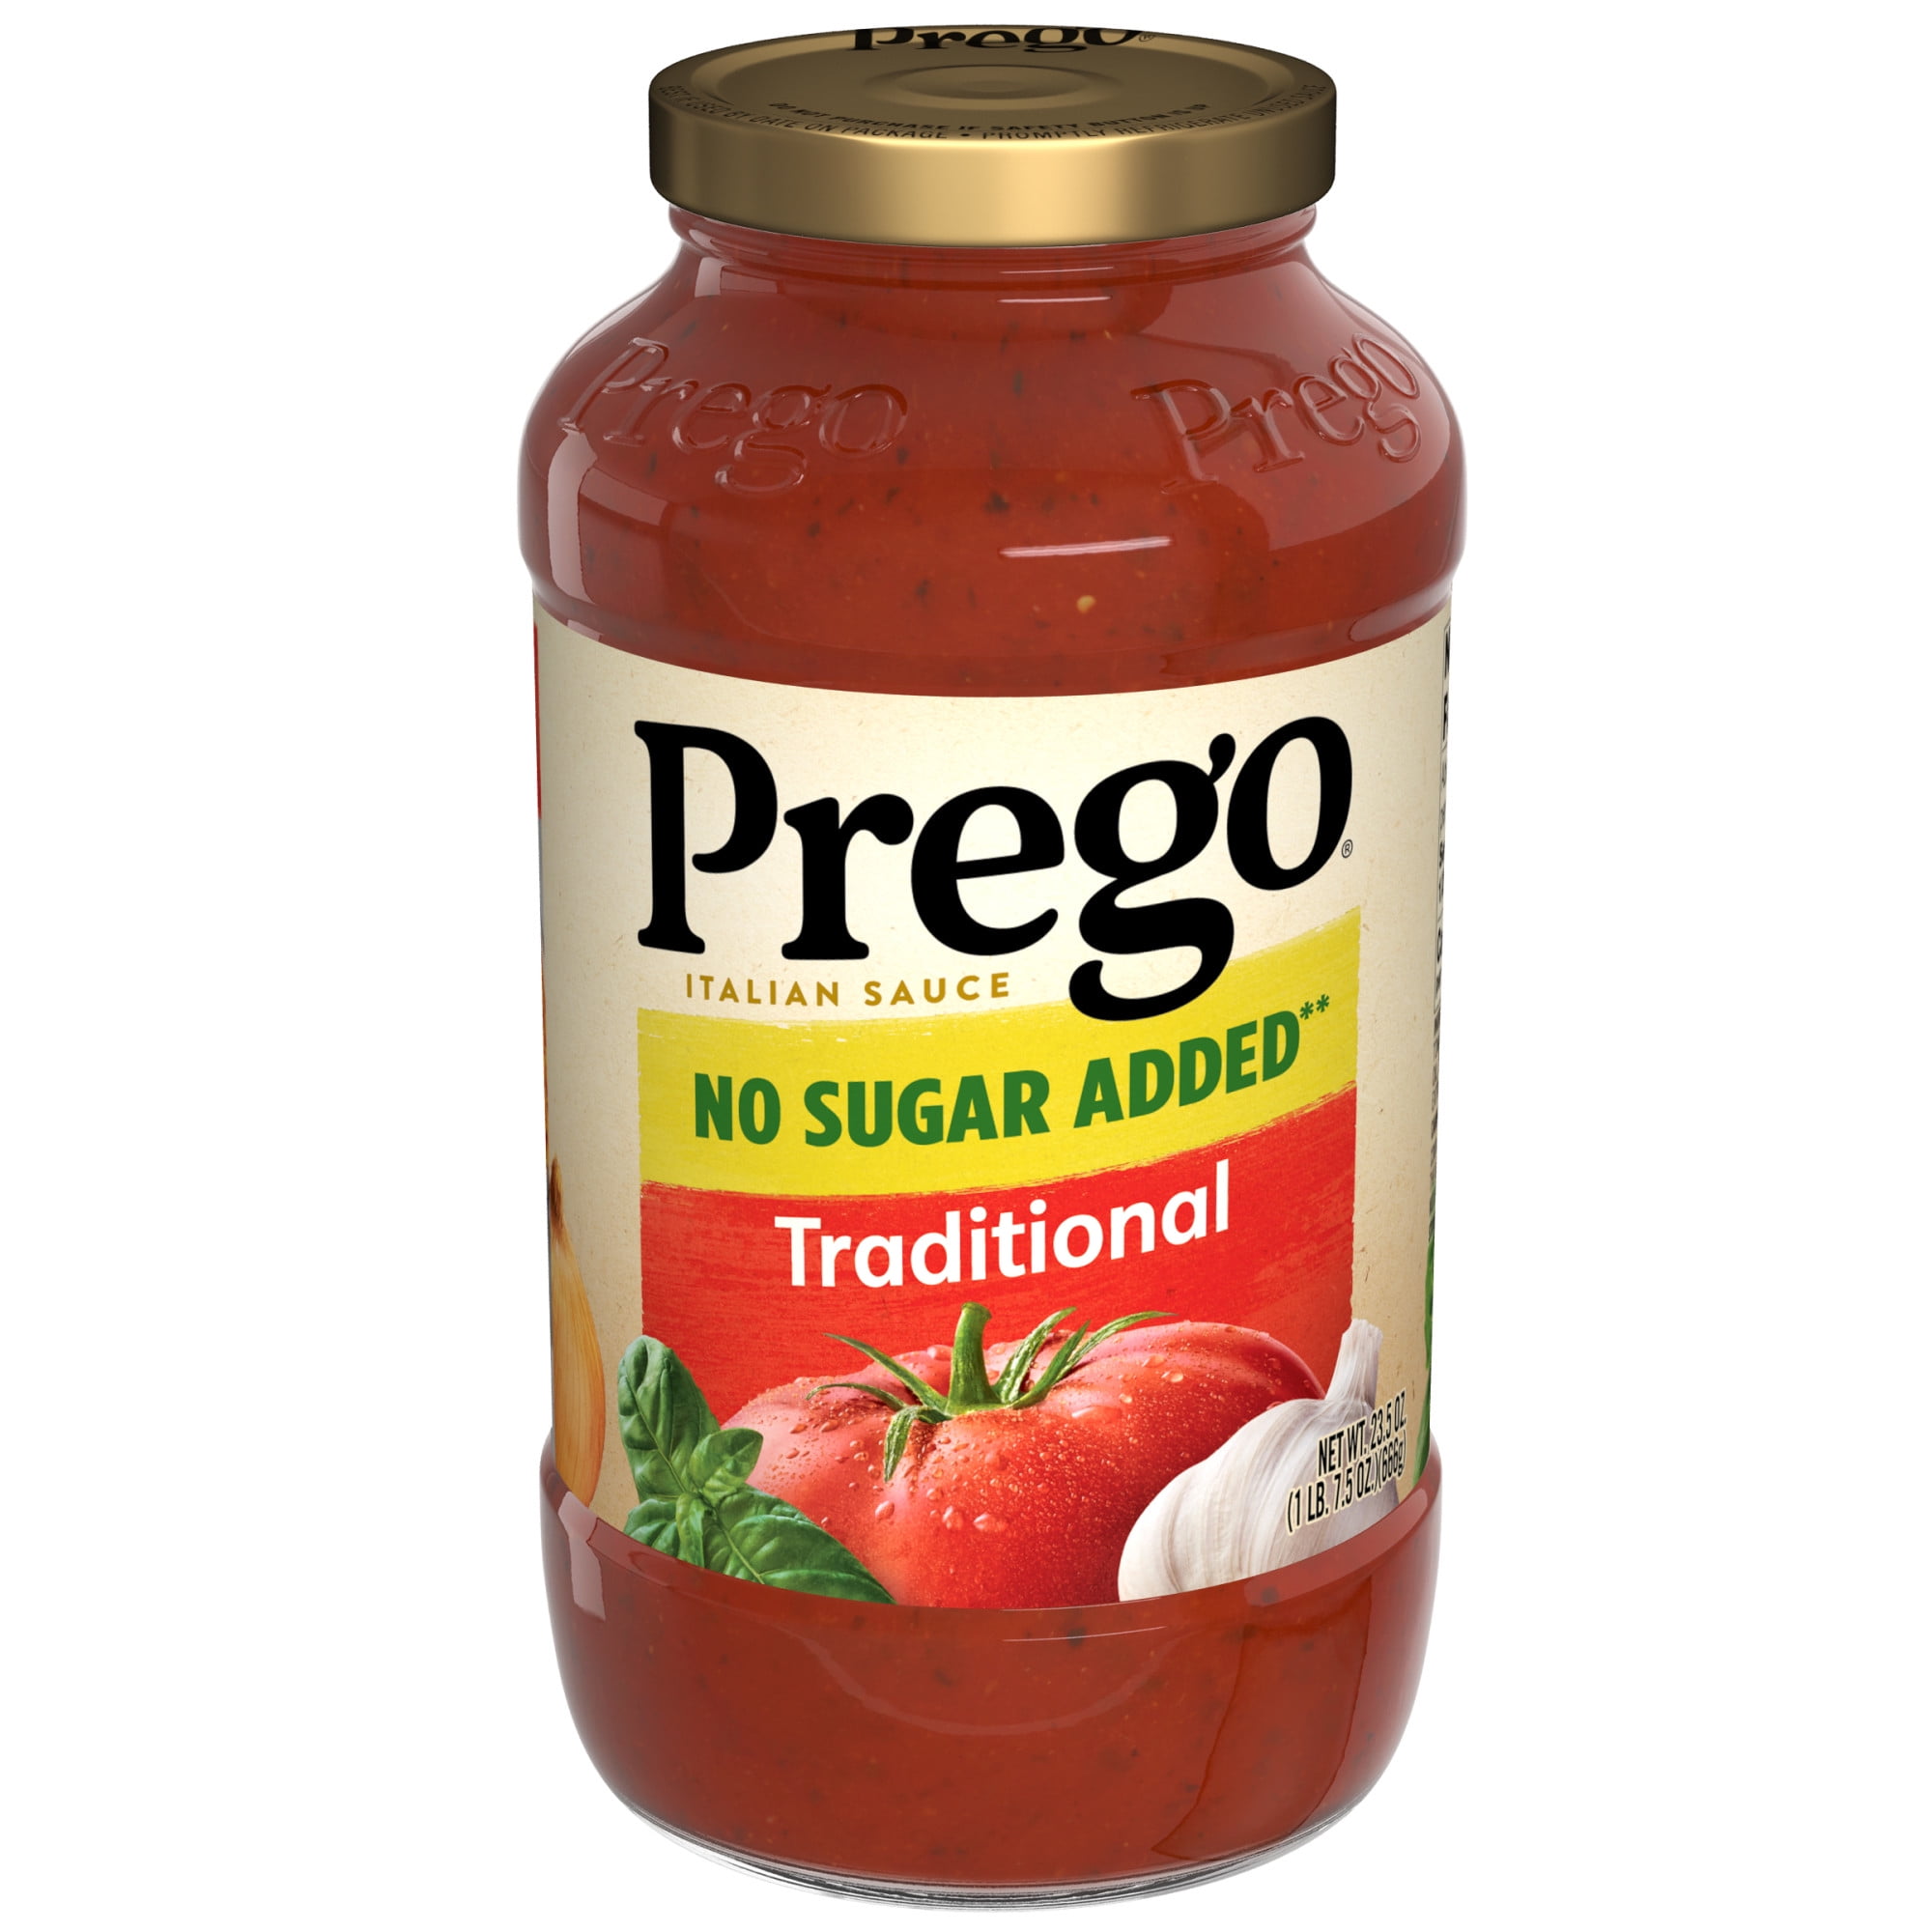 Prego Traditional No Sugar Added Spaghetti Sauce, 23.5 Oz Jar